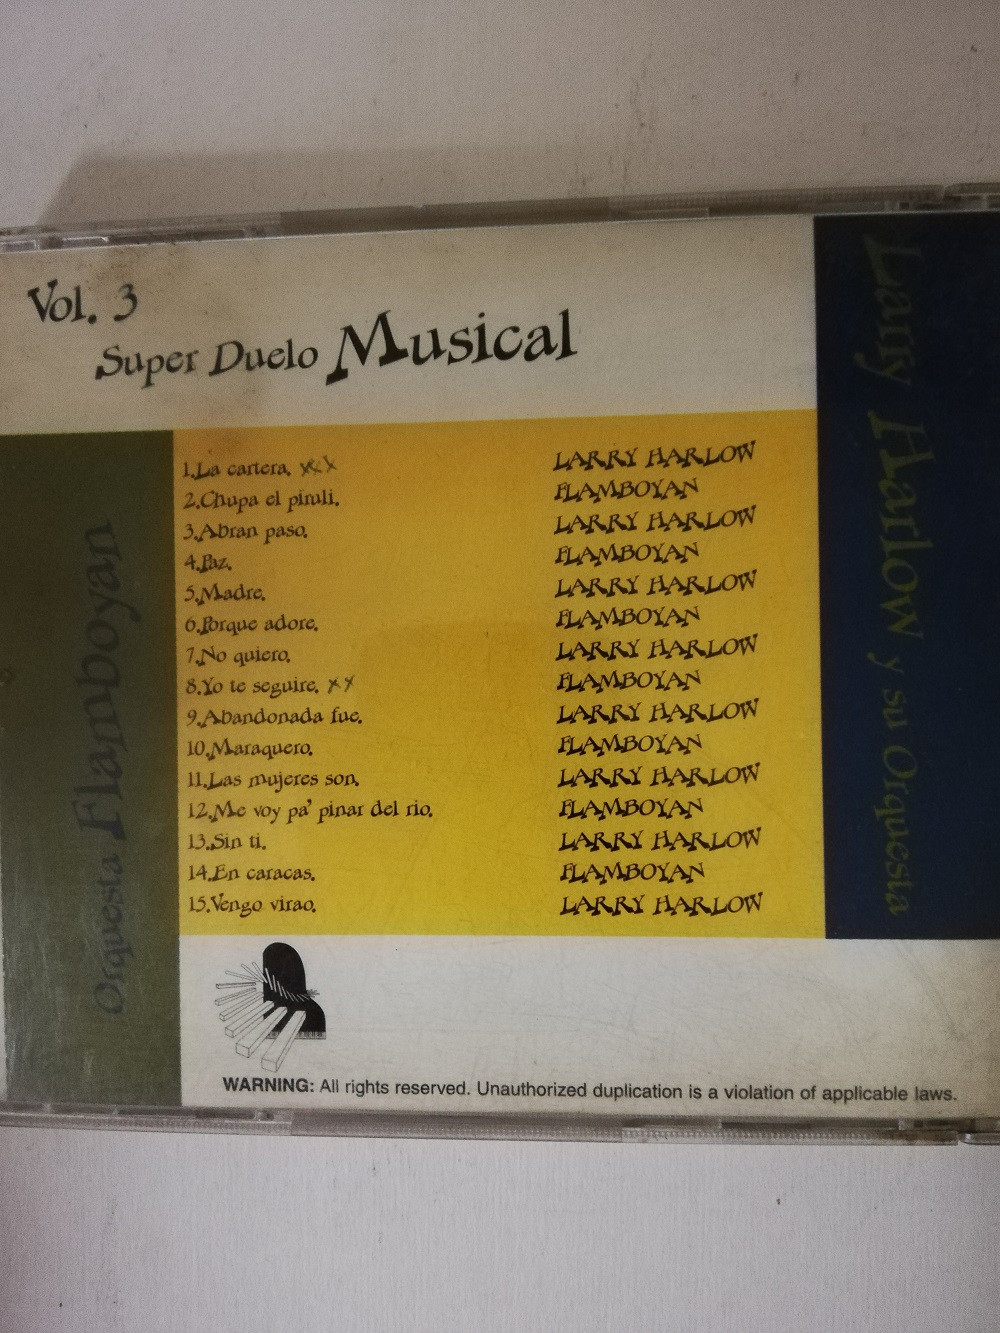 Imagen CD ORQUESTA FLAMBOYAN/LARRY HARLOW Y SU ORQUESTA - SUPER DUELO MUSICAL VOL. 3 2